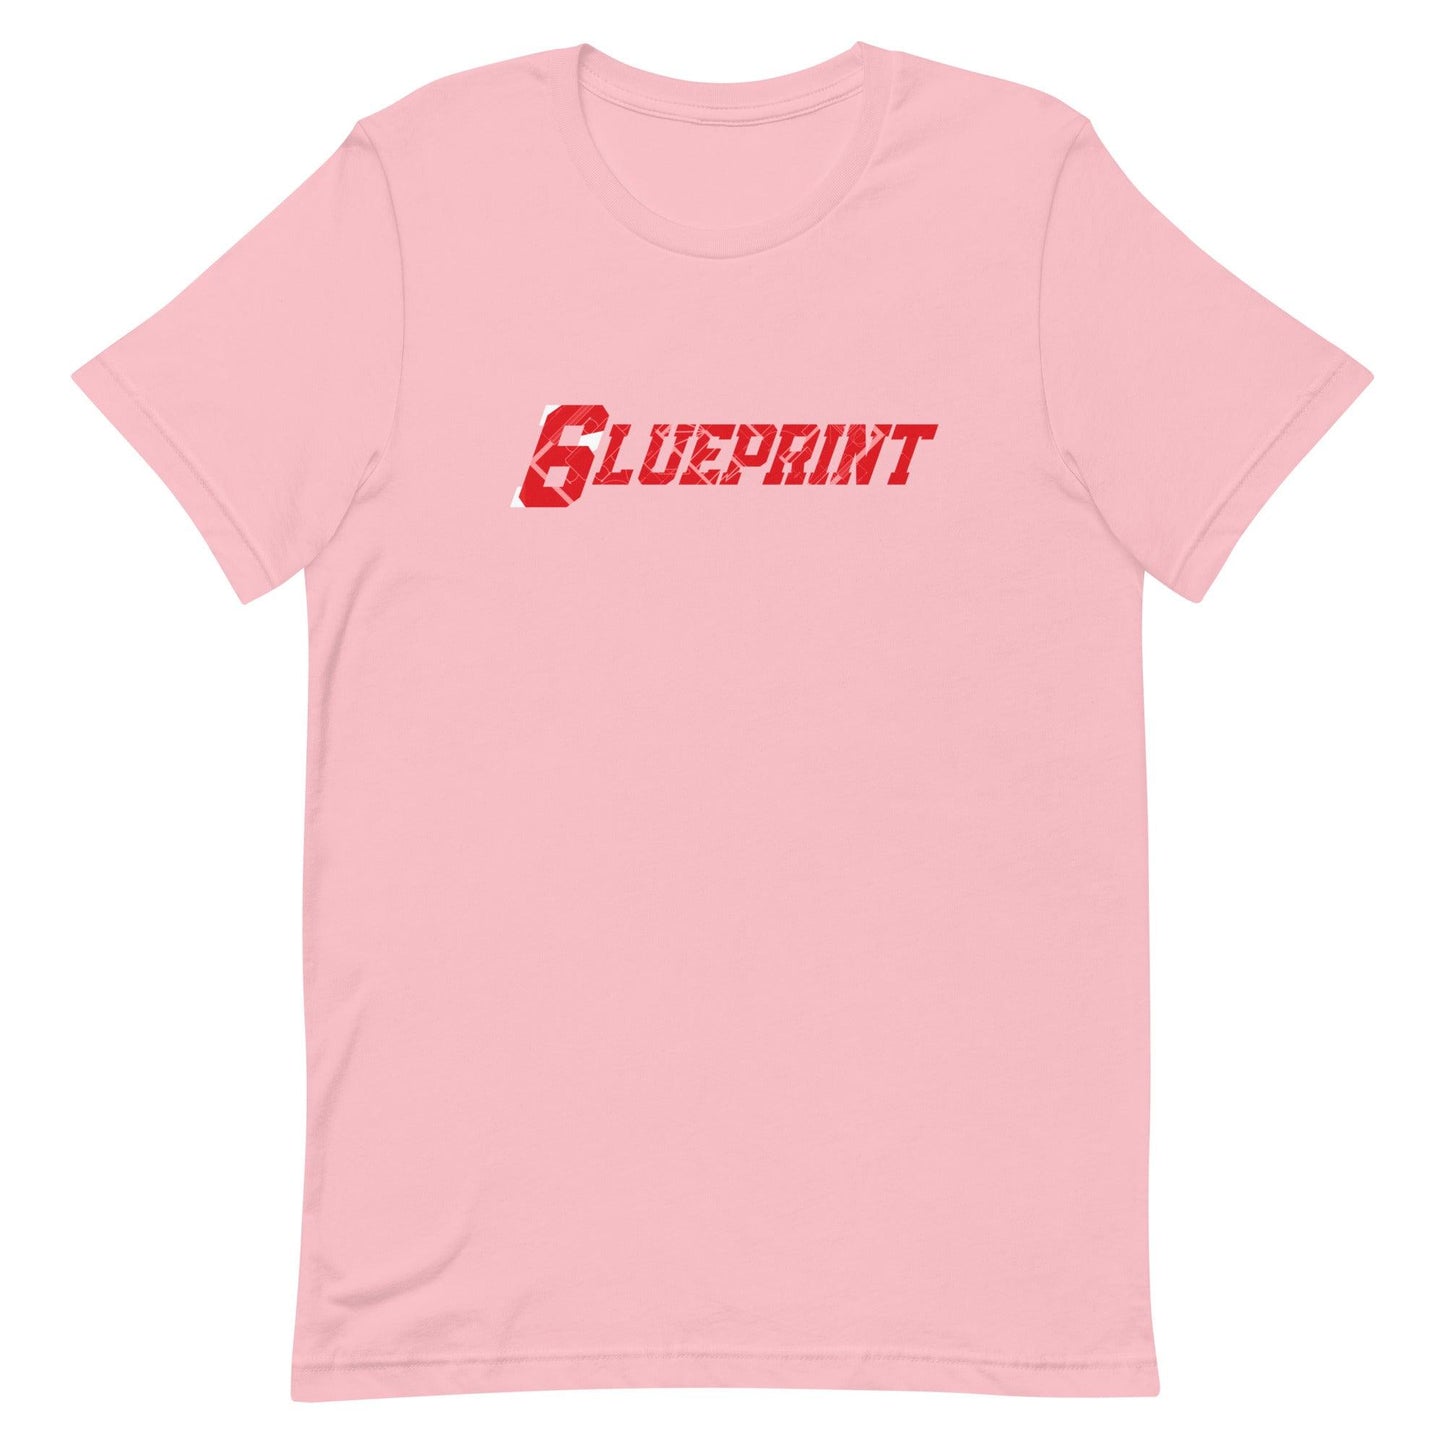 Kenny McIntosh "6lueprint" t-shirt - Fan Arch